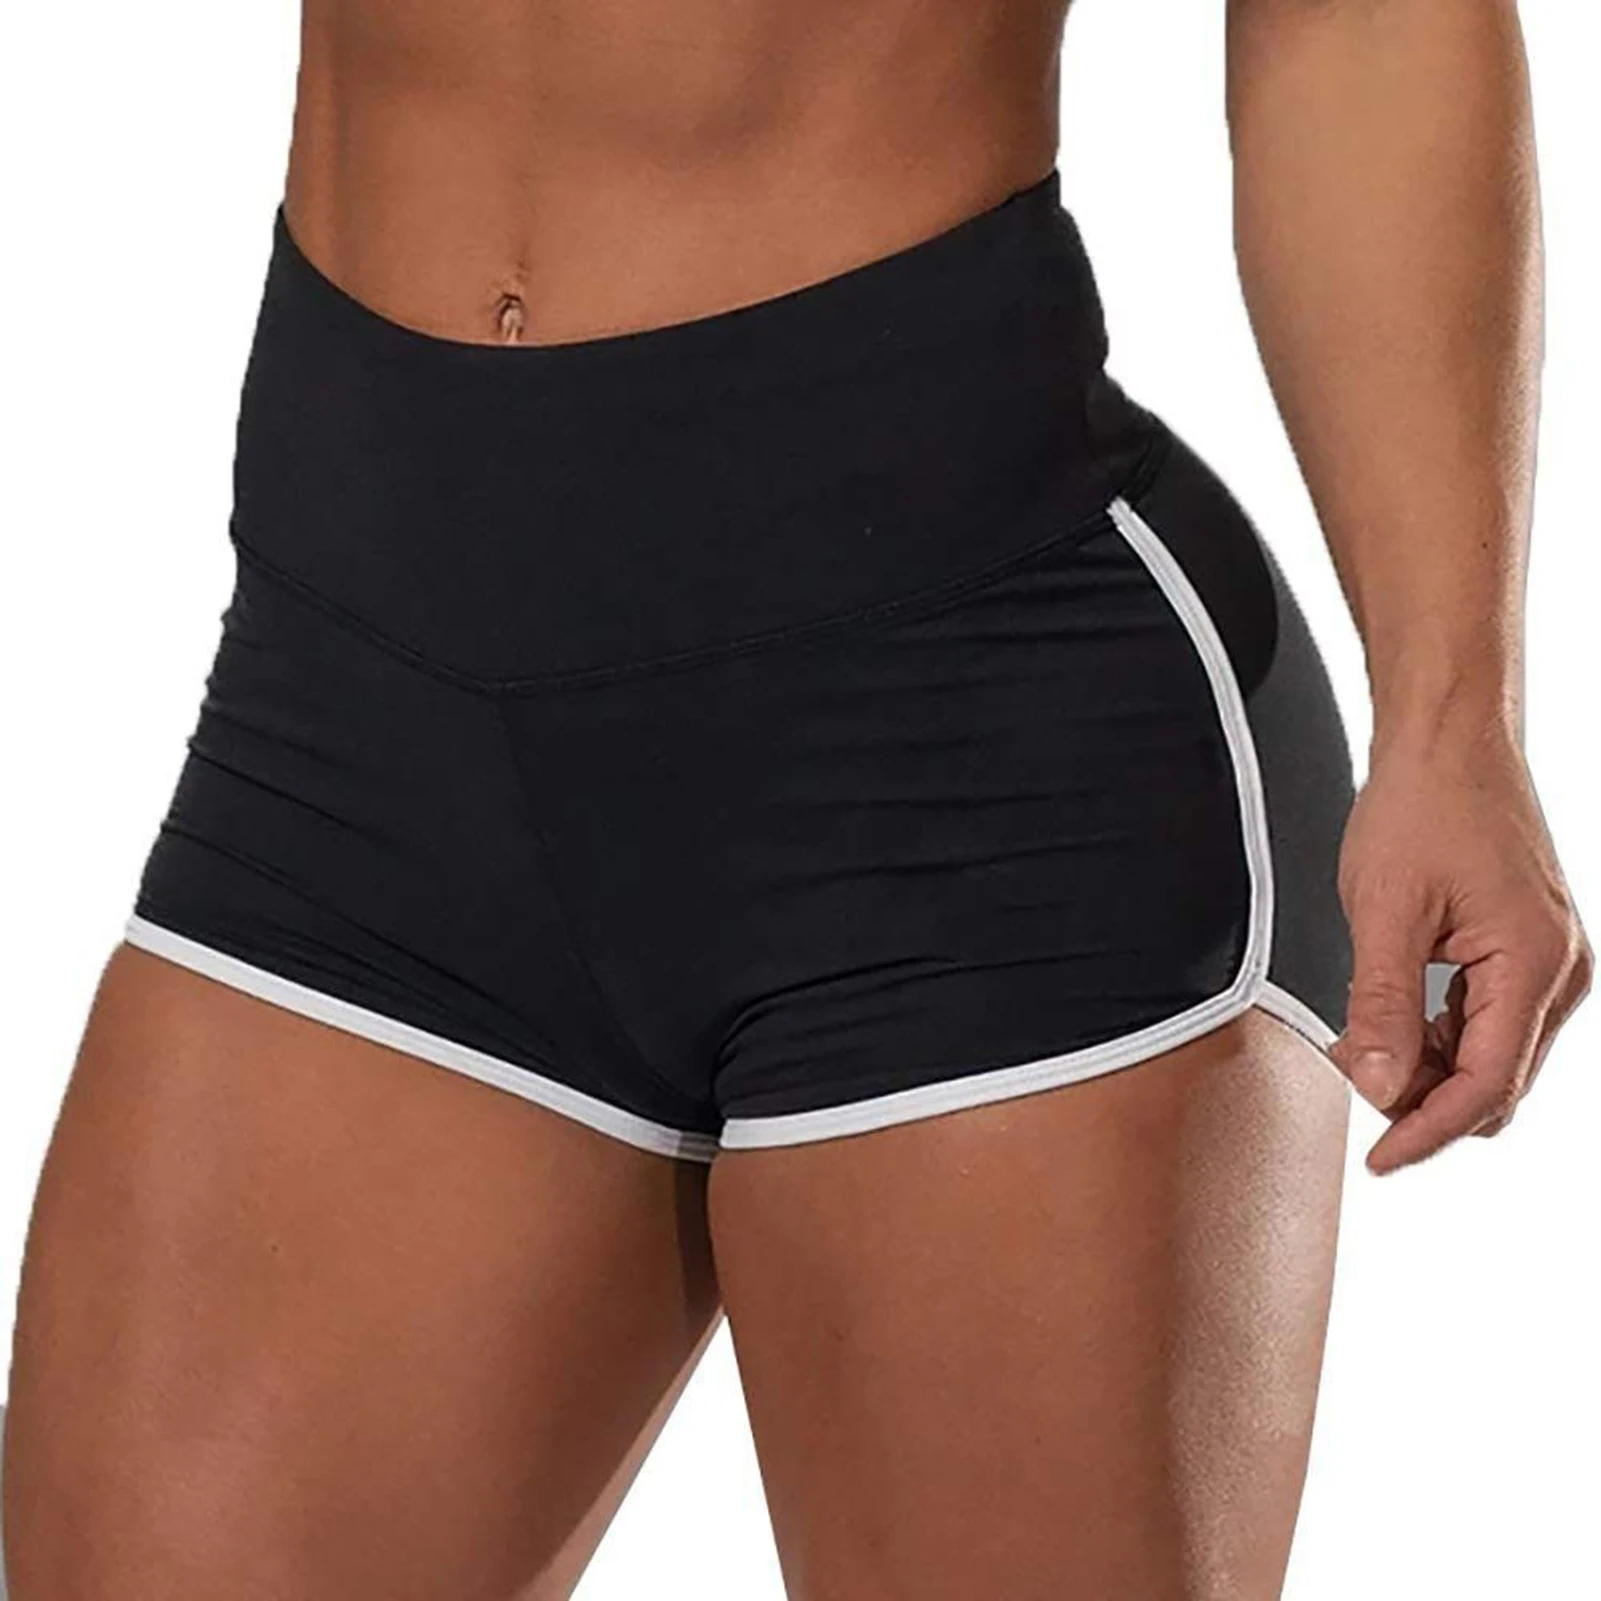 Женские спортивные шорты, мягкие и дышащие спортивные штаны для активного отдыха, тренажерного зала, фитнеса